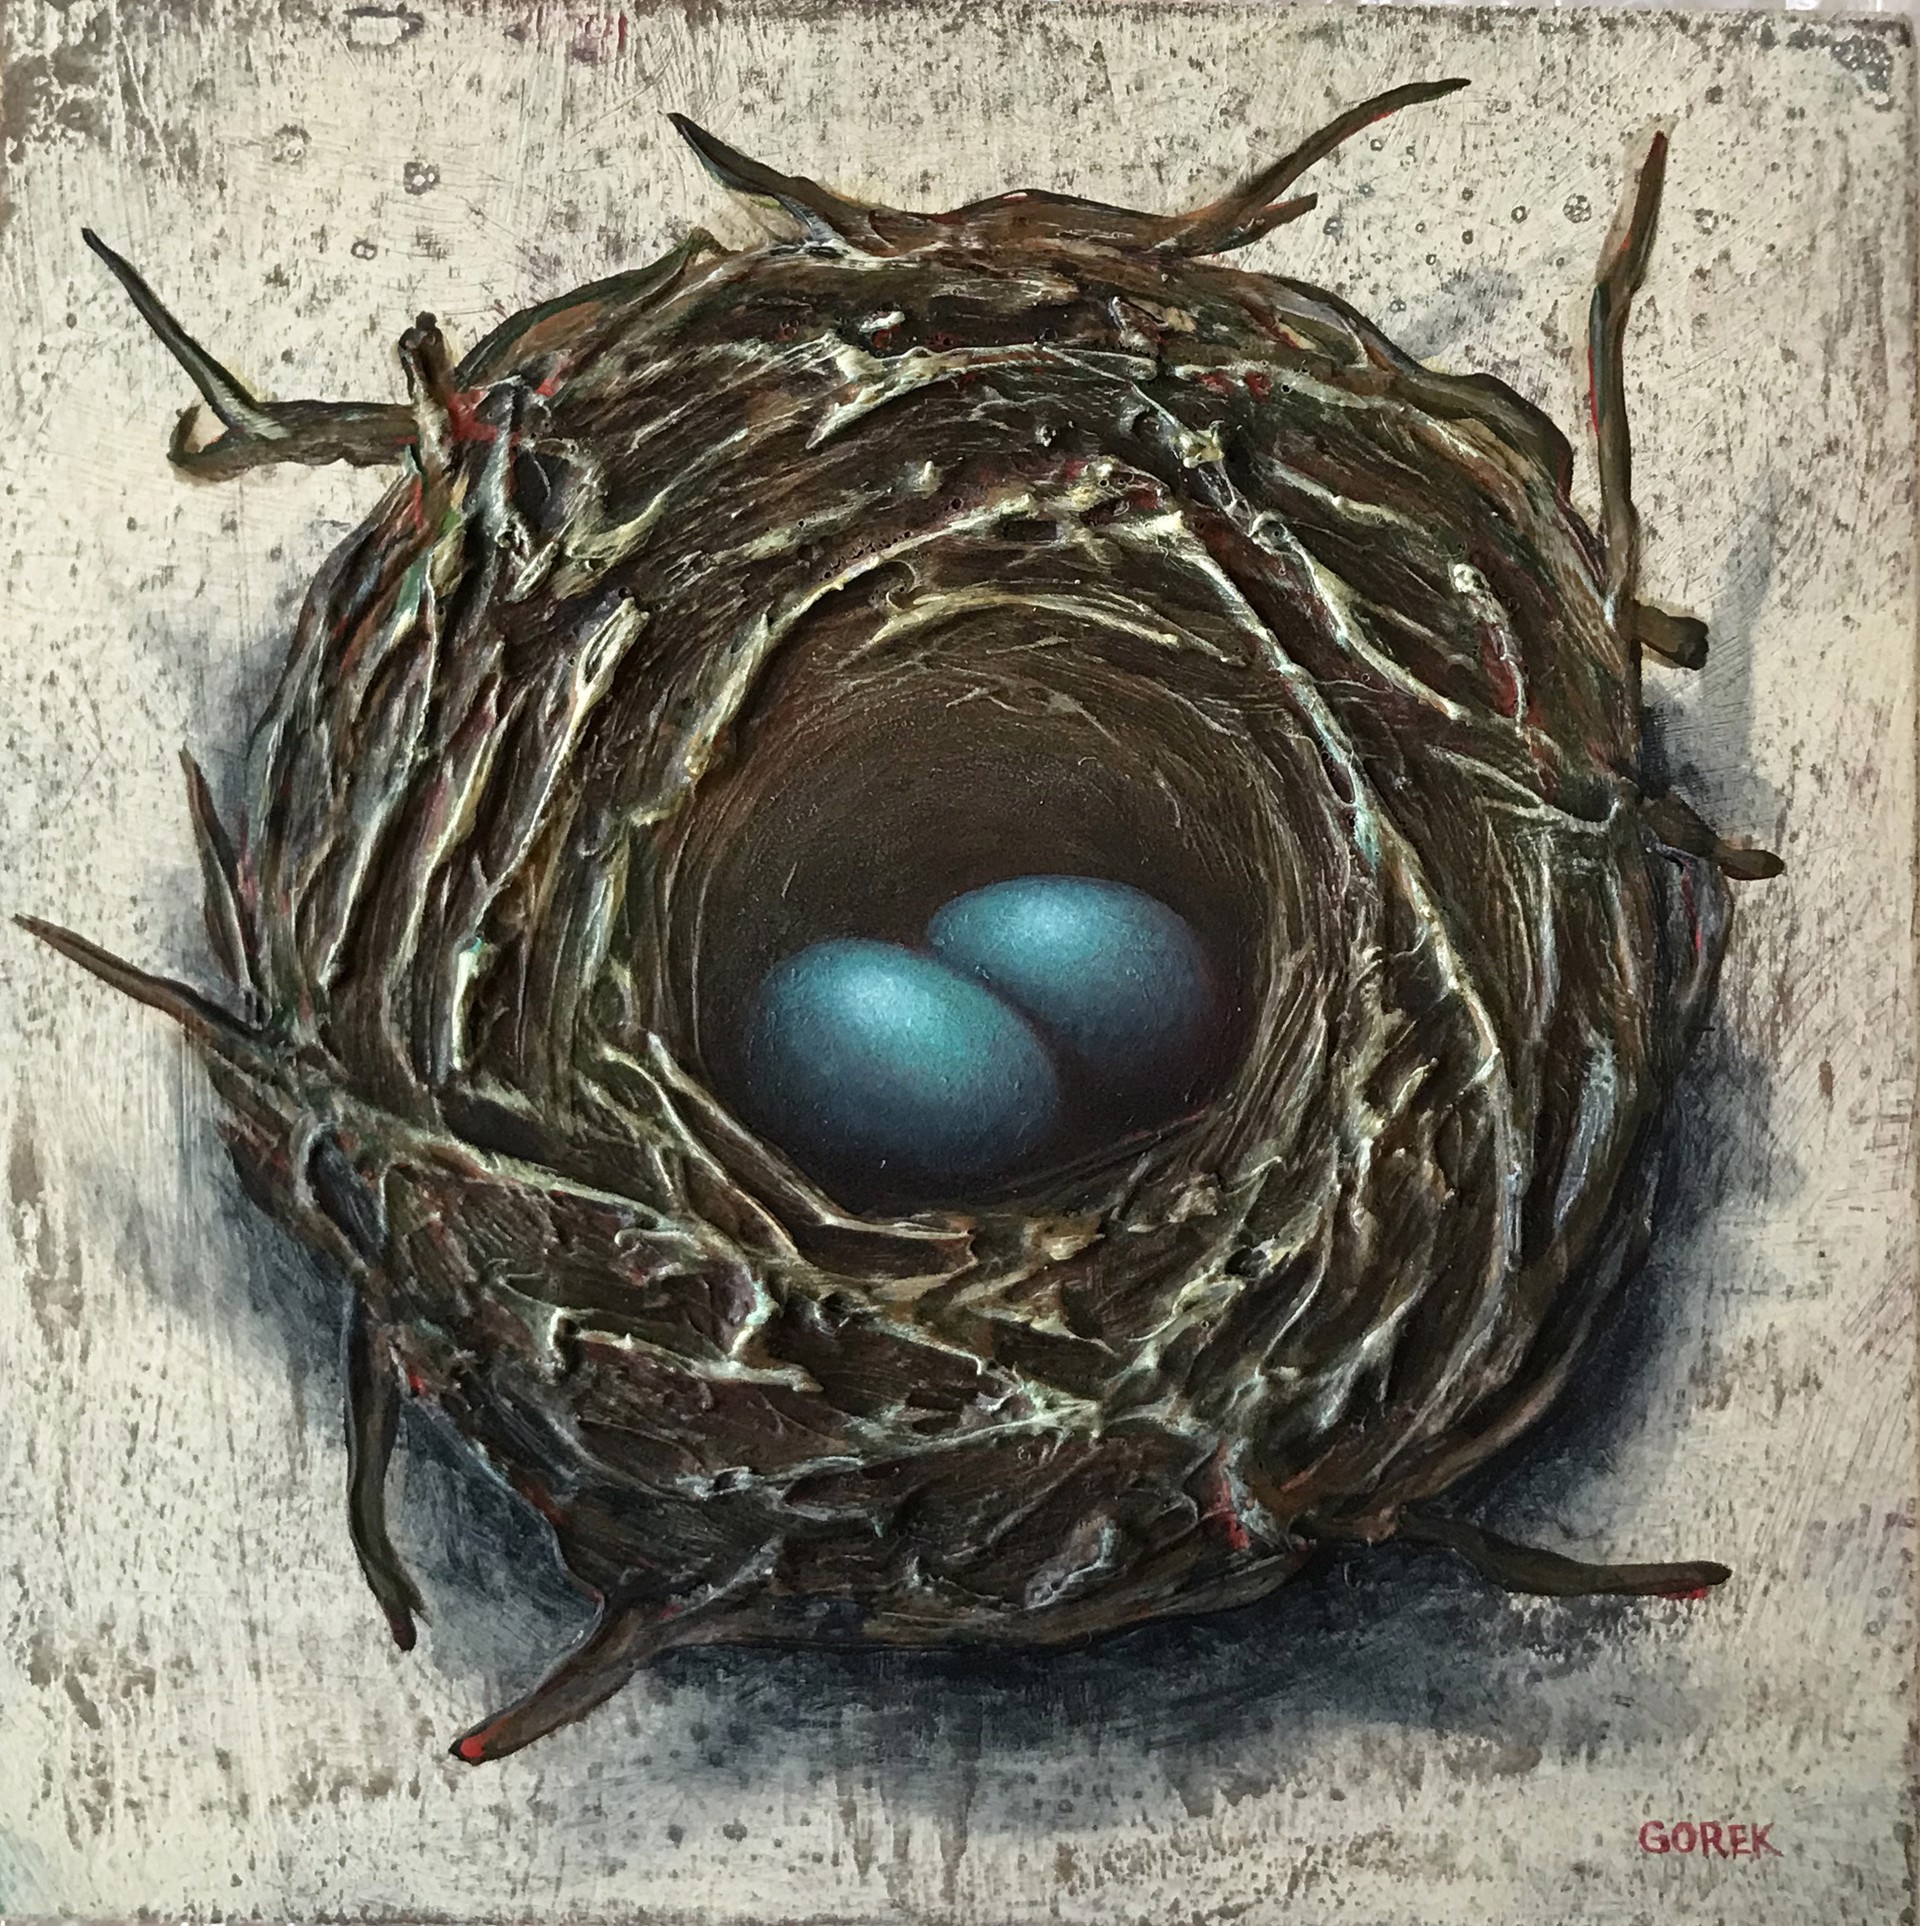 Bird's Nest, 2 Eggs by Thane Gorek